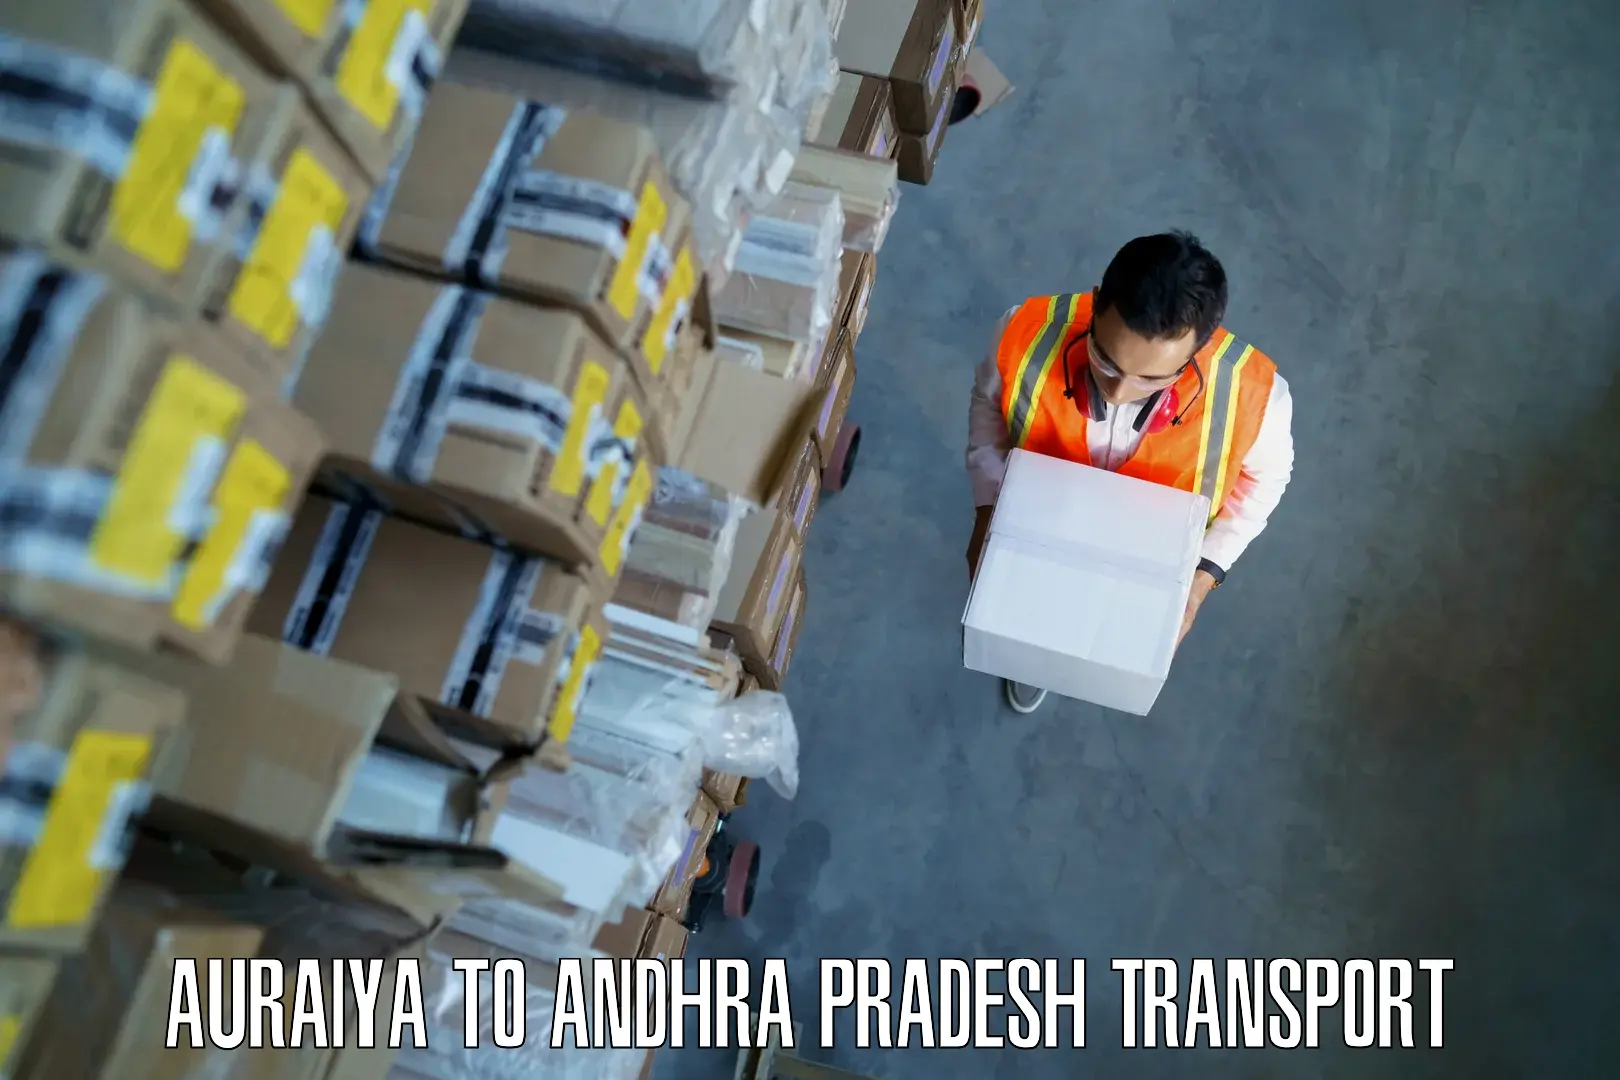 Furniture transport service Auraiya to Hukumpeta